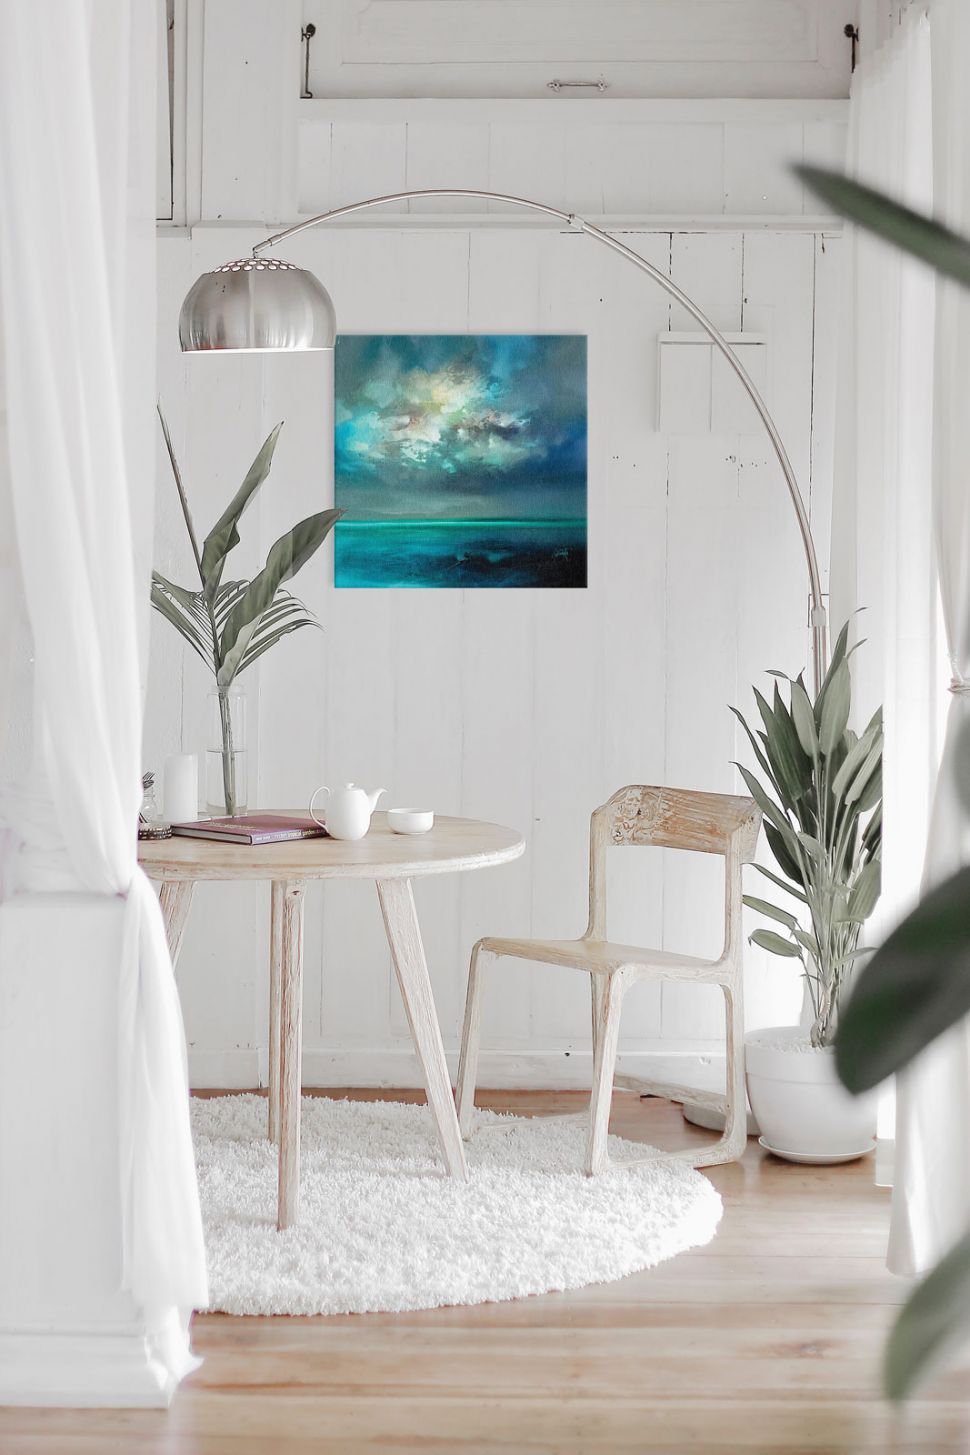 Canvas niebieskiej wyspy zawieszony w salonie nad stolikiem i krzesłem obok kwiatka i lampy